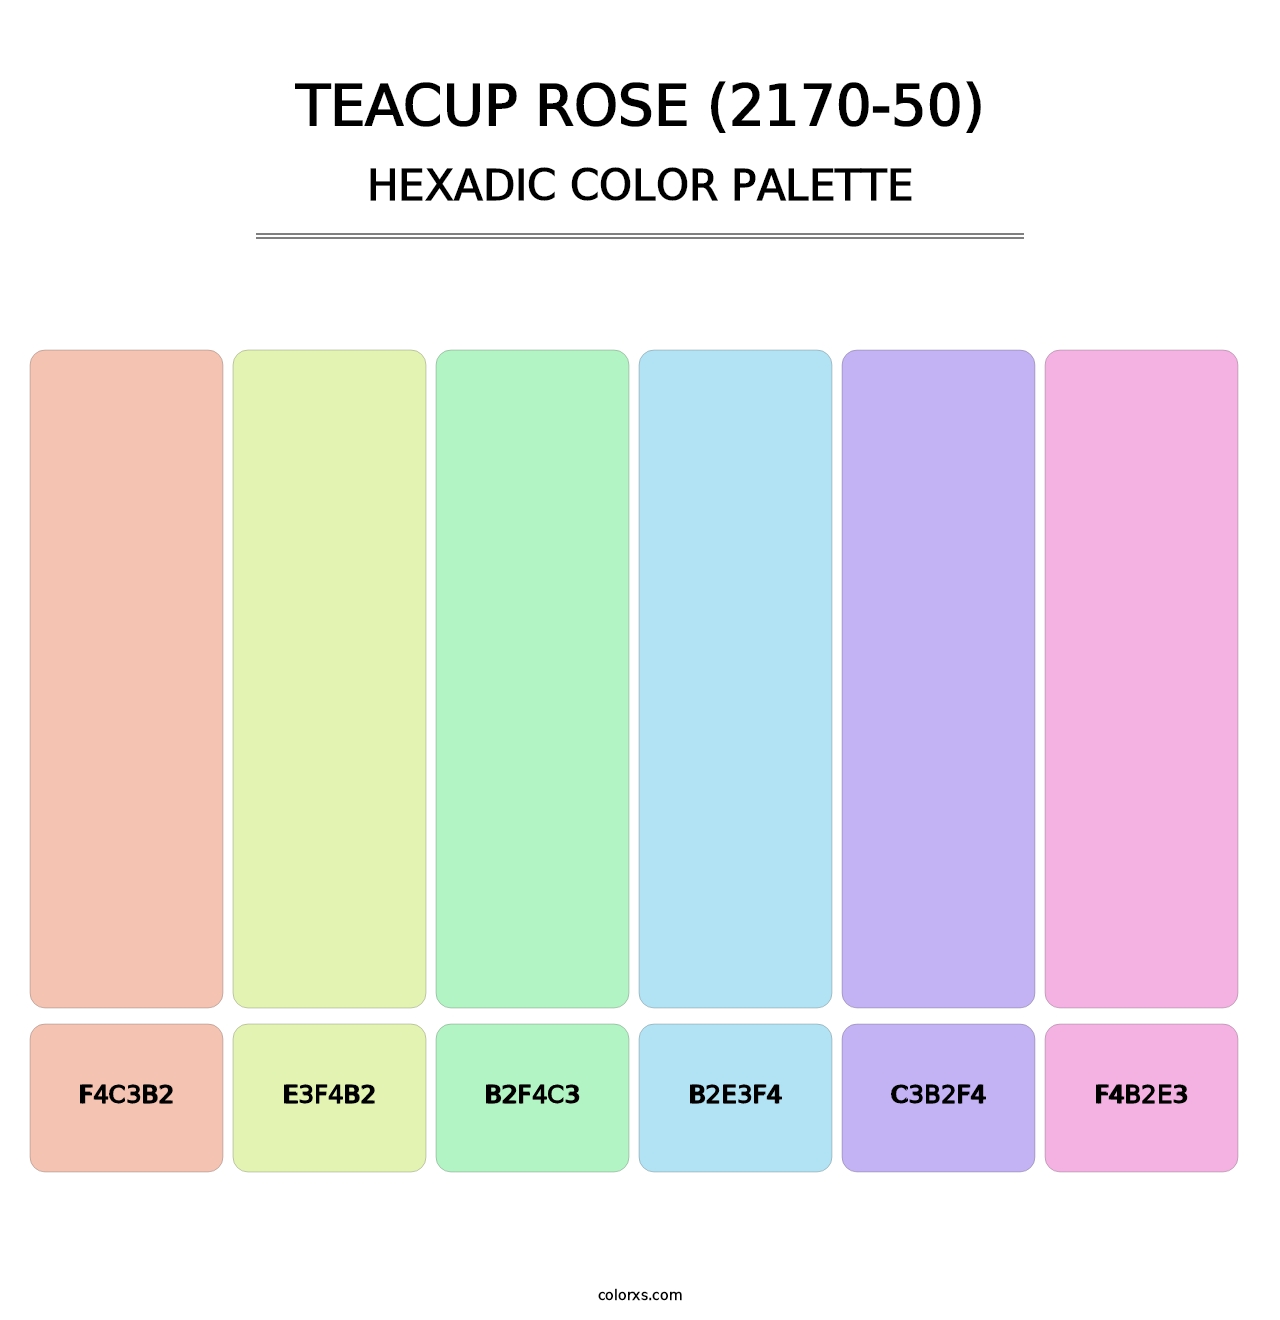 Teacup Rose (2170-50) - Hexadic Color Palette